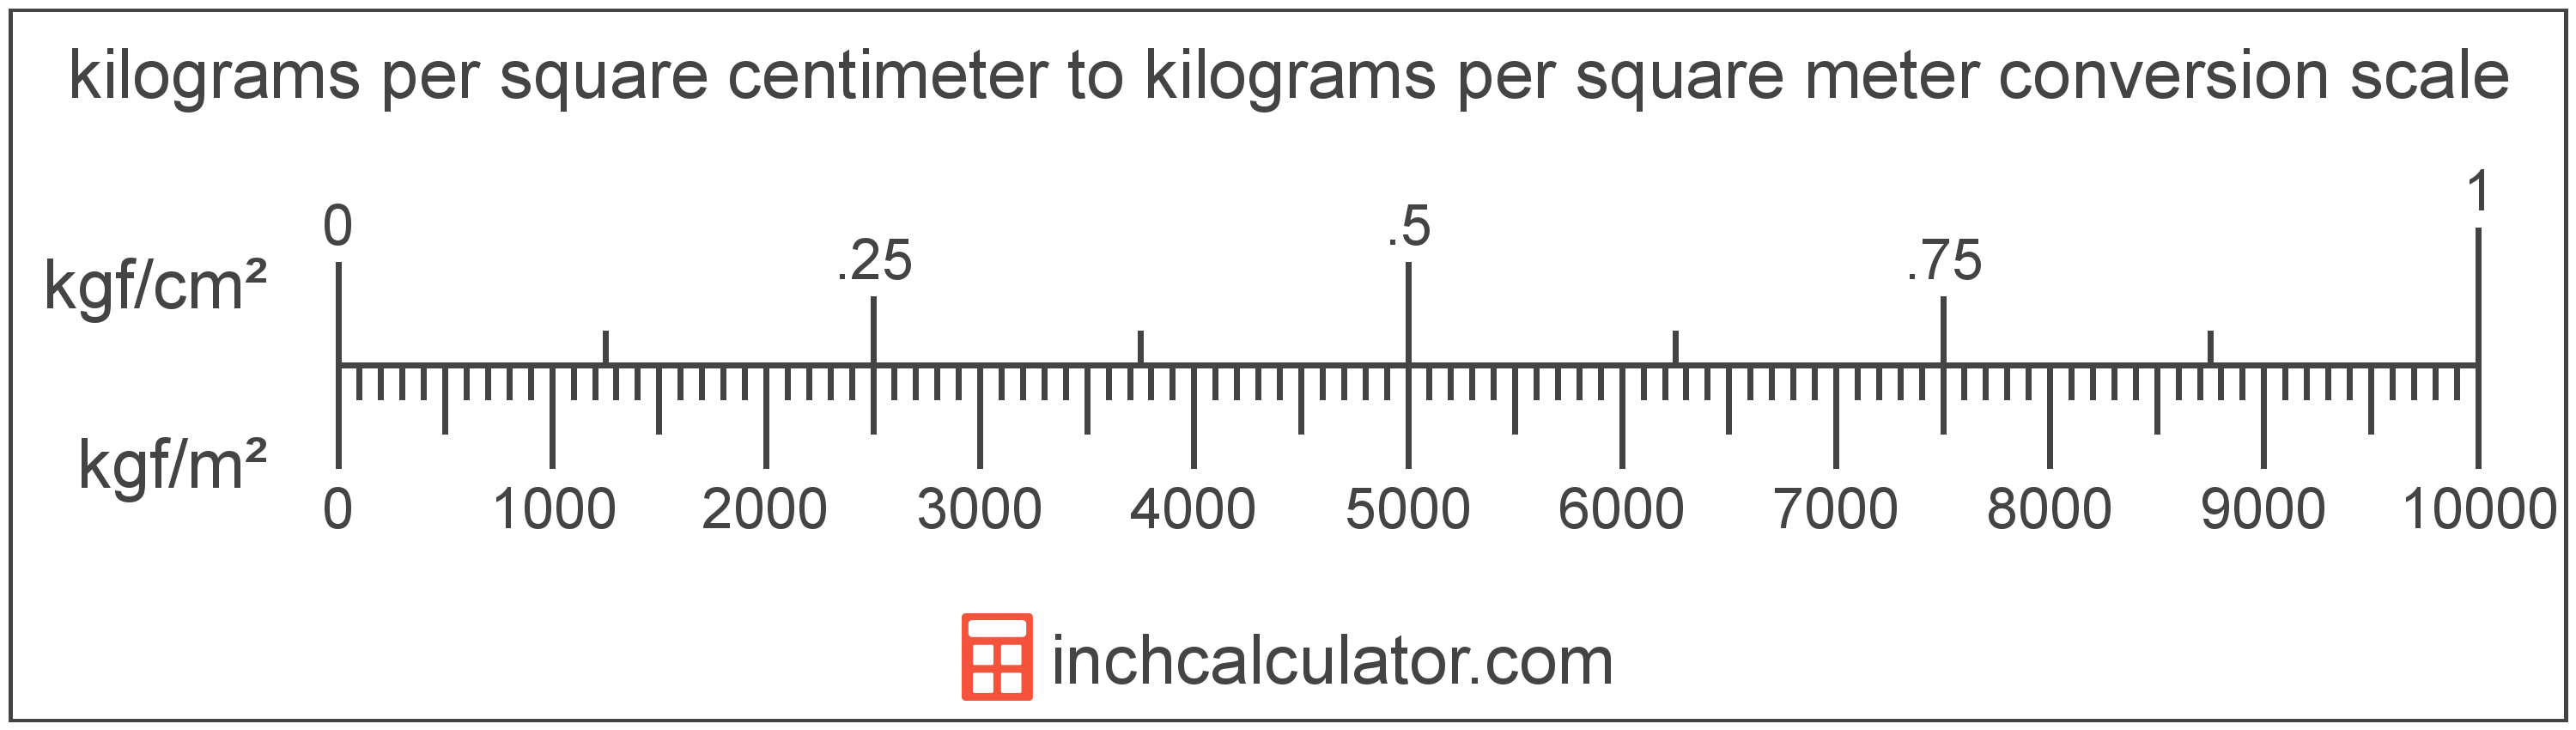 Kilo Plate Chart